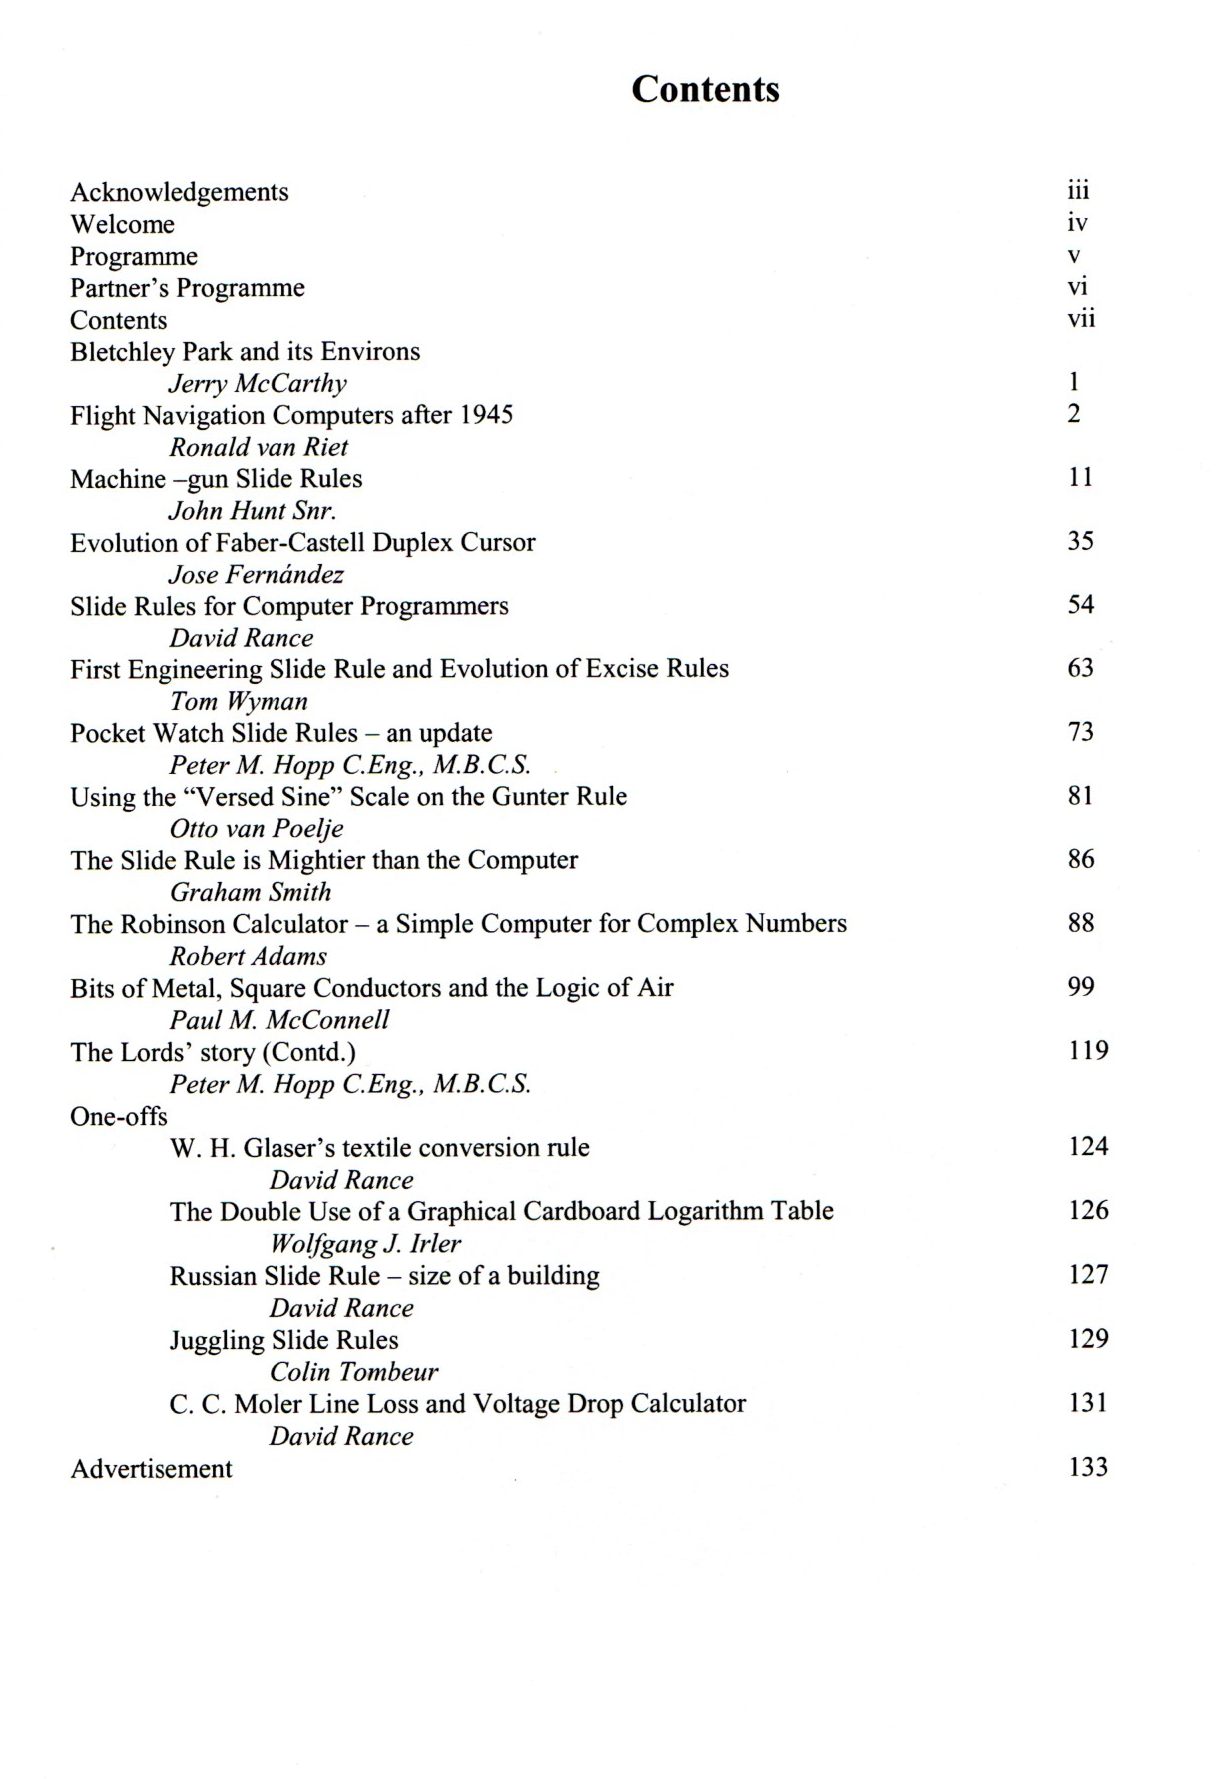 IM2012 Proceedings contents